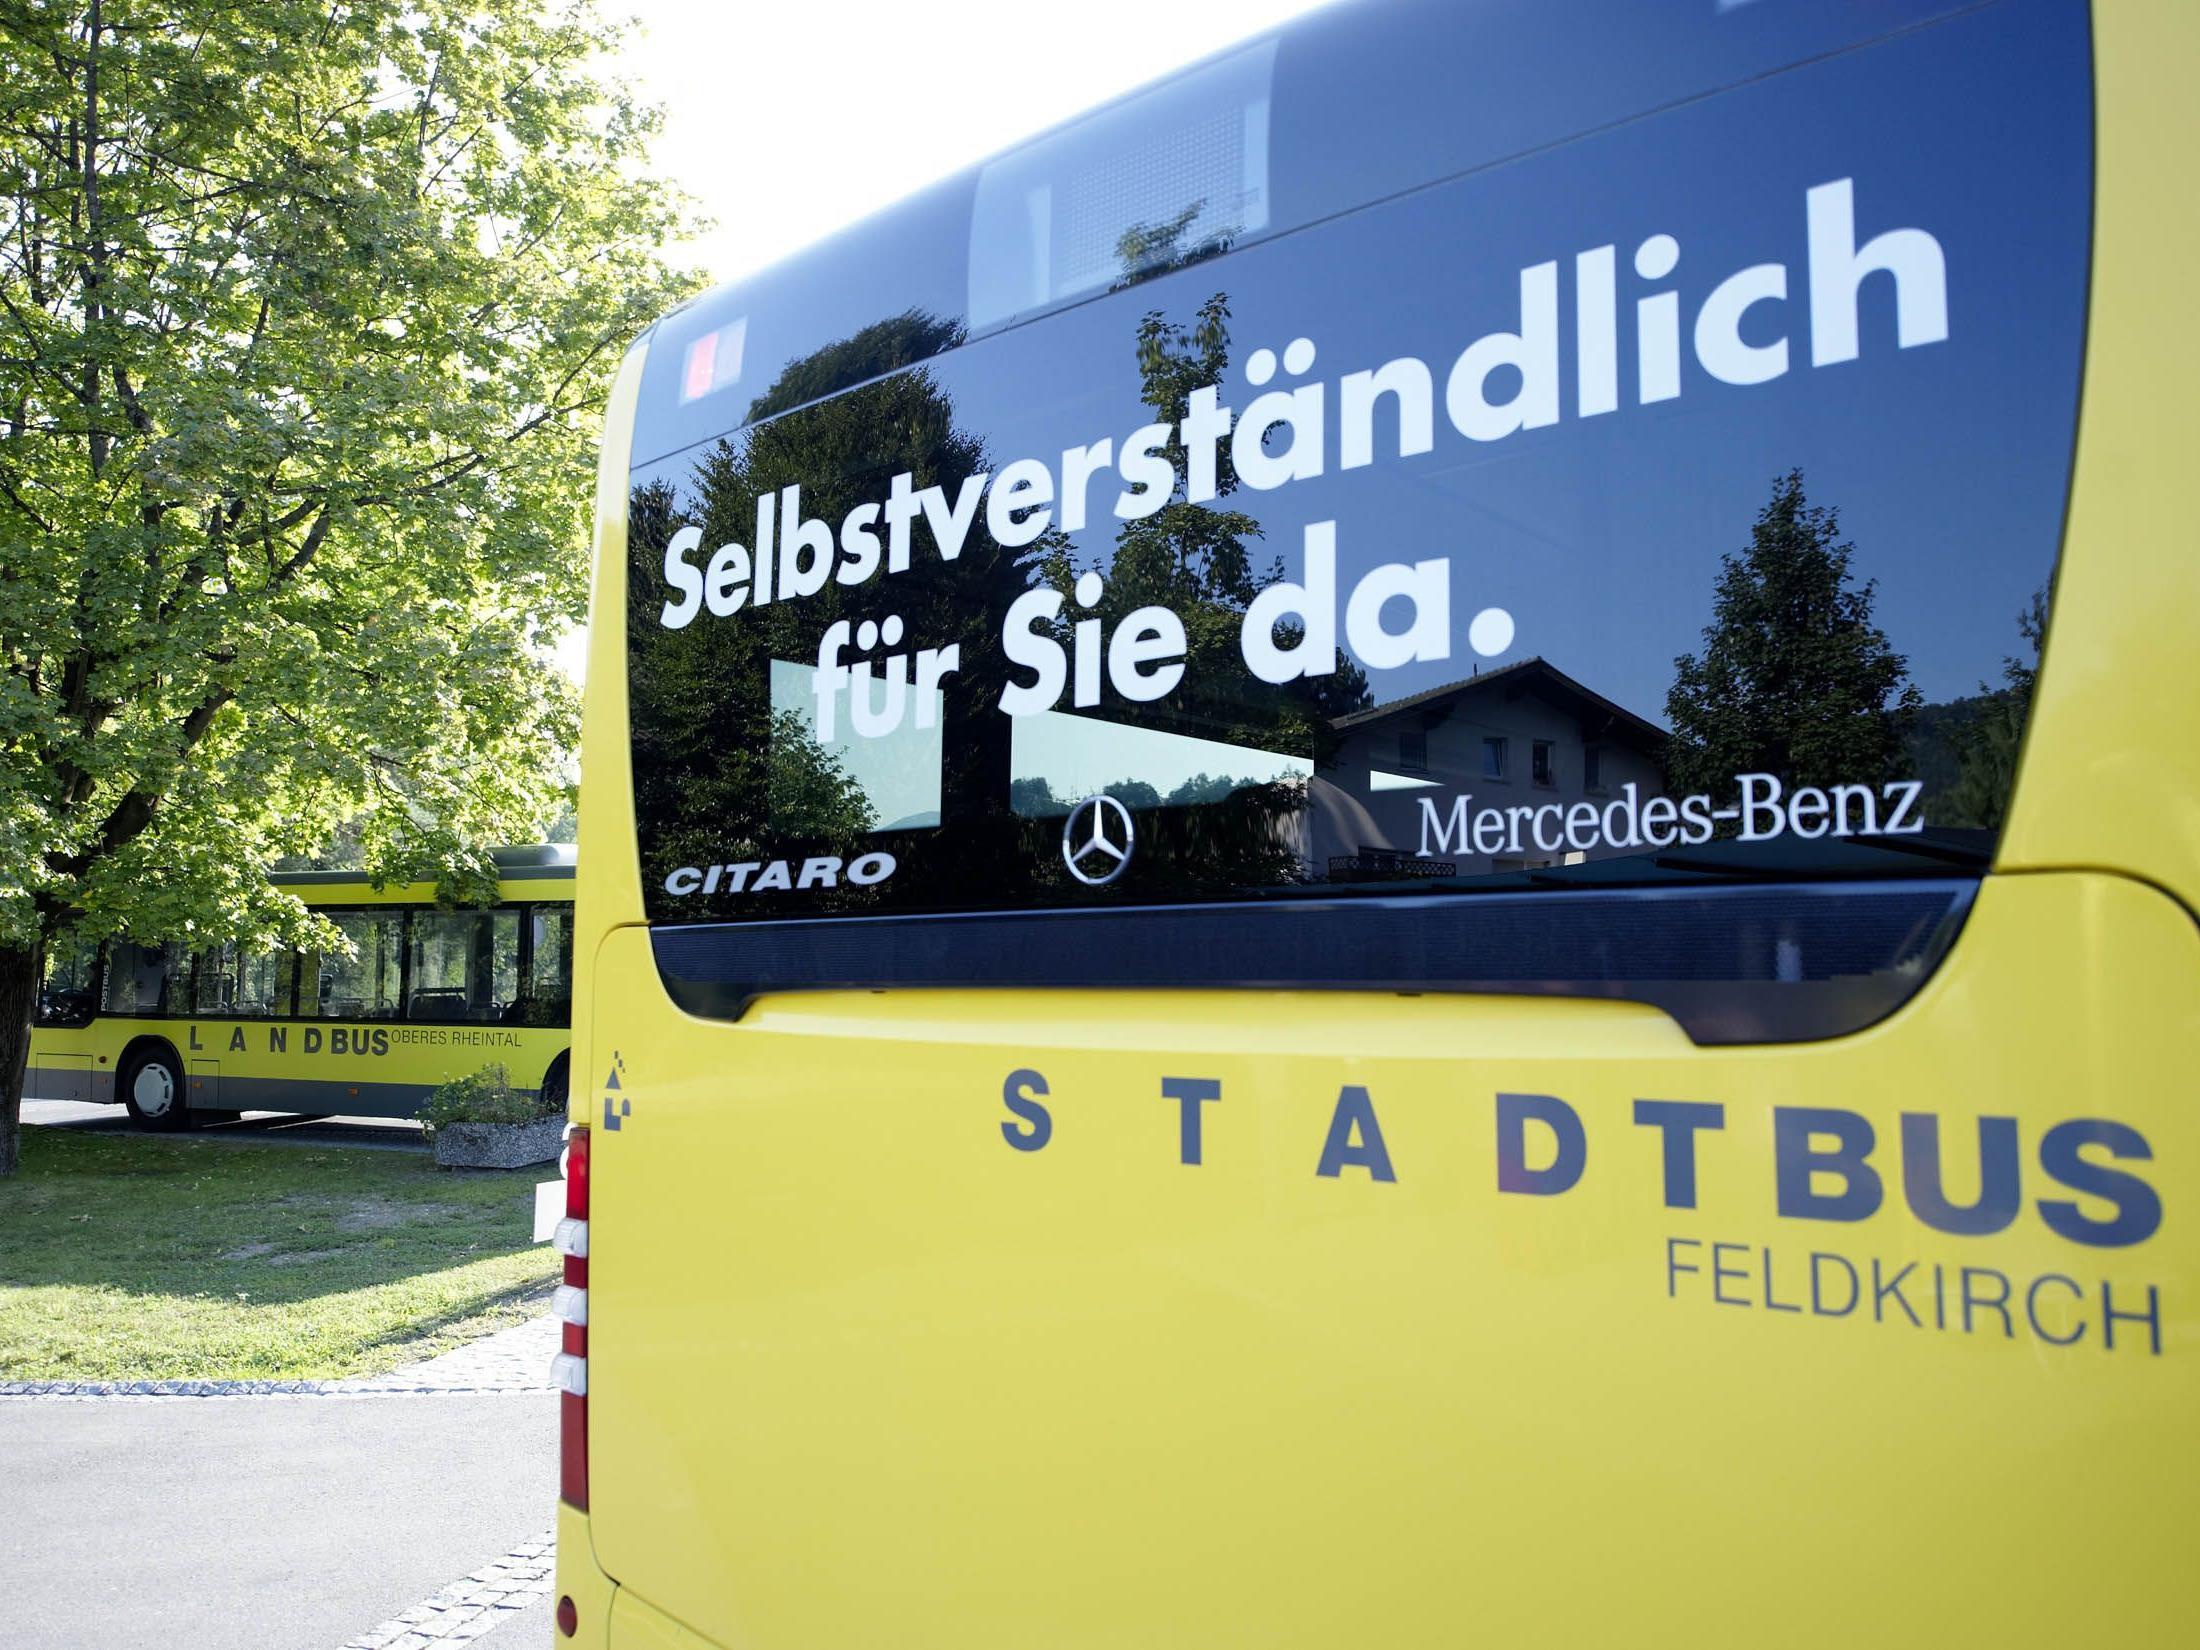 Stadt und Landbus sind der ideale Zubringer zum größten Faschingsumzug des Landes in Feldkirch.